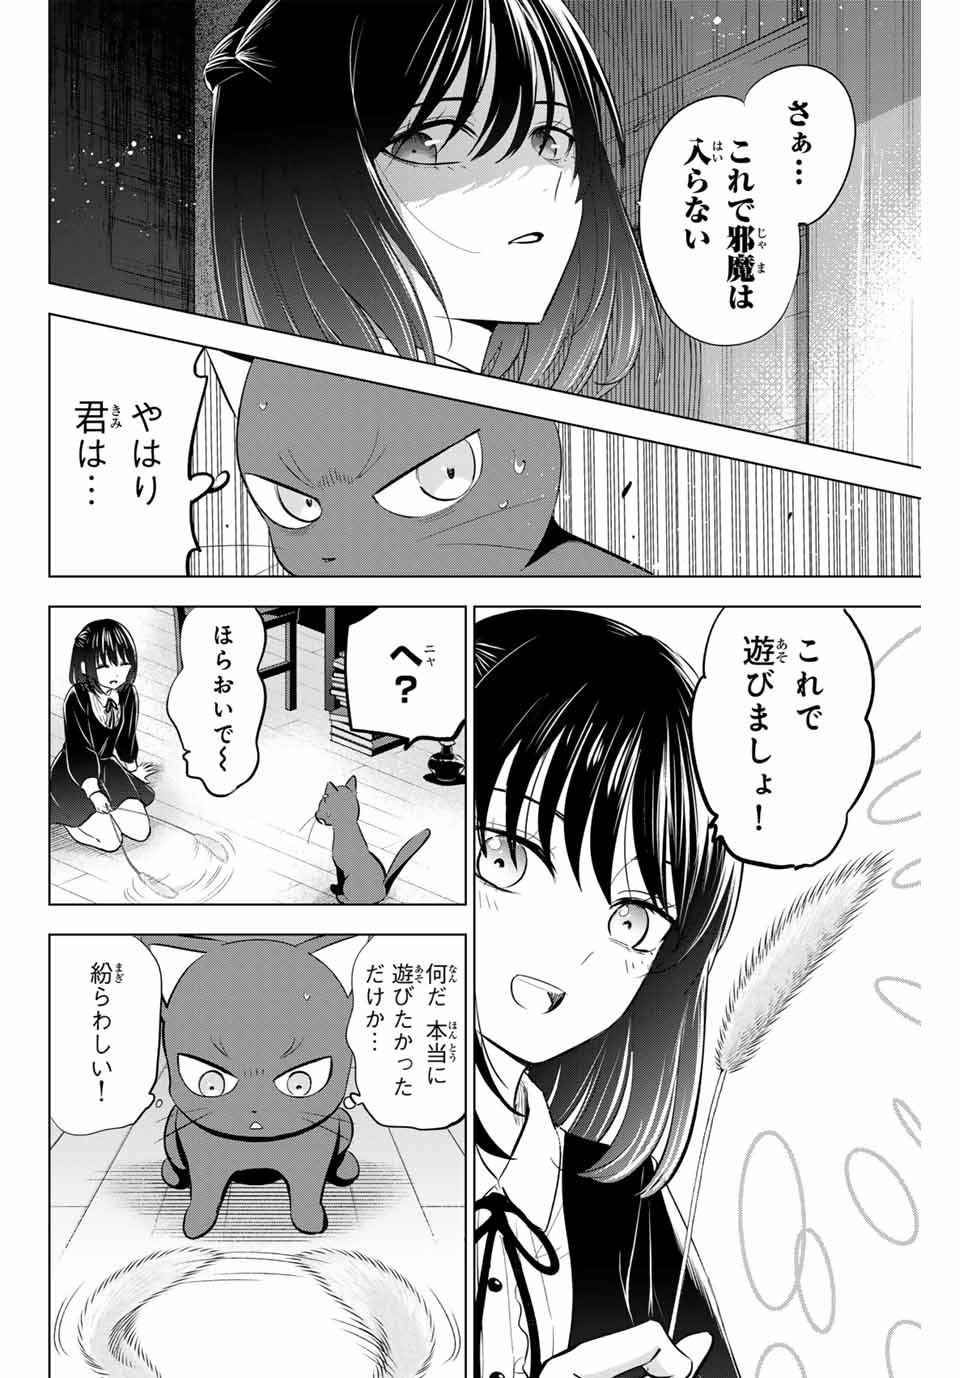 Kuroneko to Majo no Kyoushitsu - Chapter 61 - Page 10